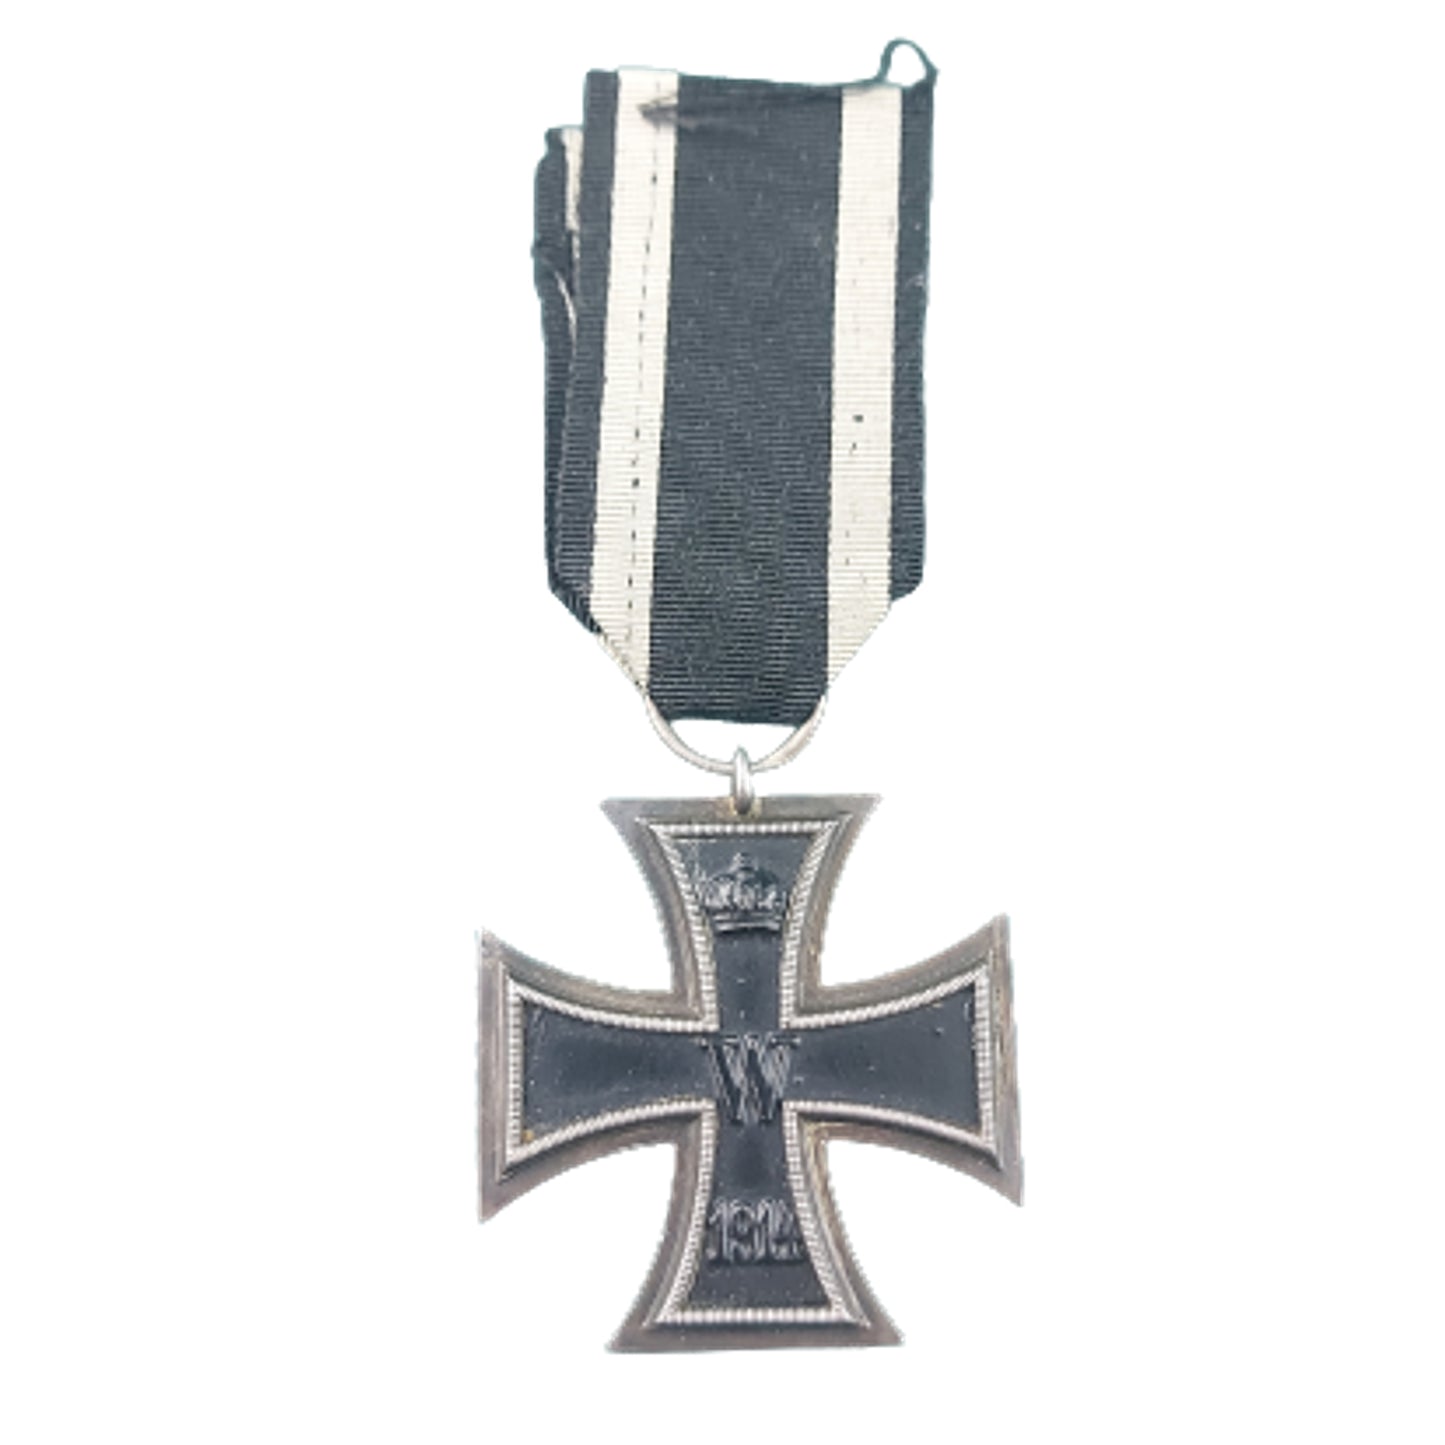 WW1 German Iron Cross 2nd Class -Maker Marked